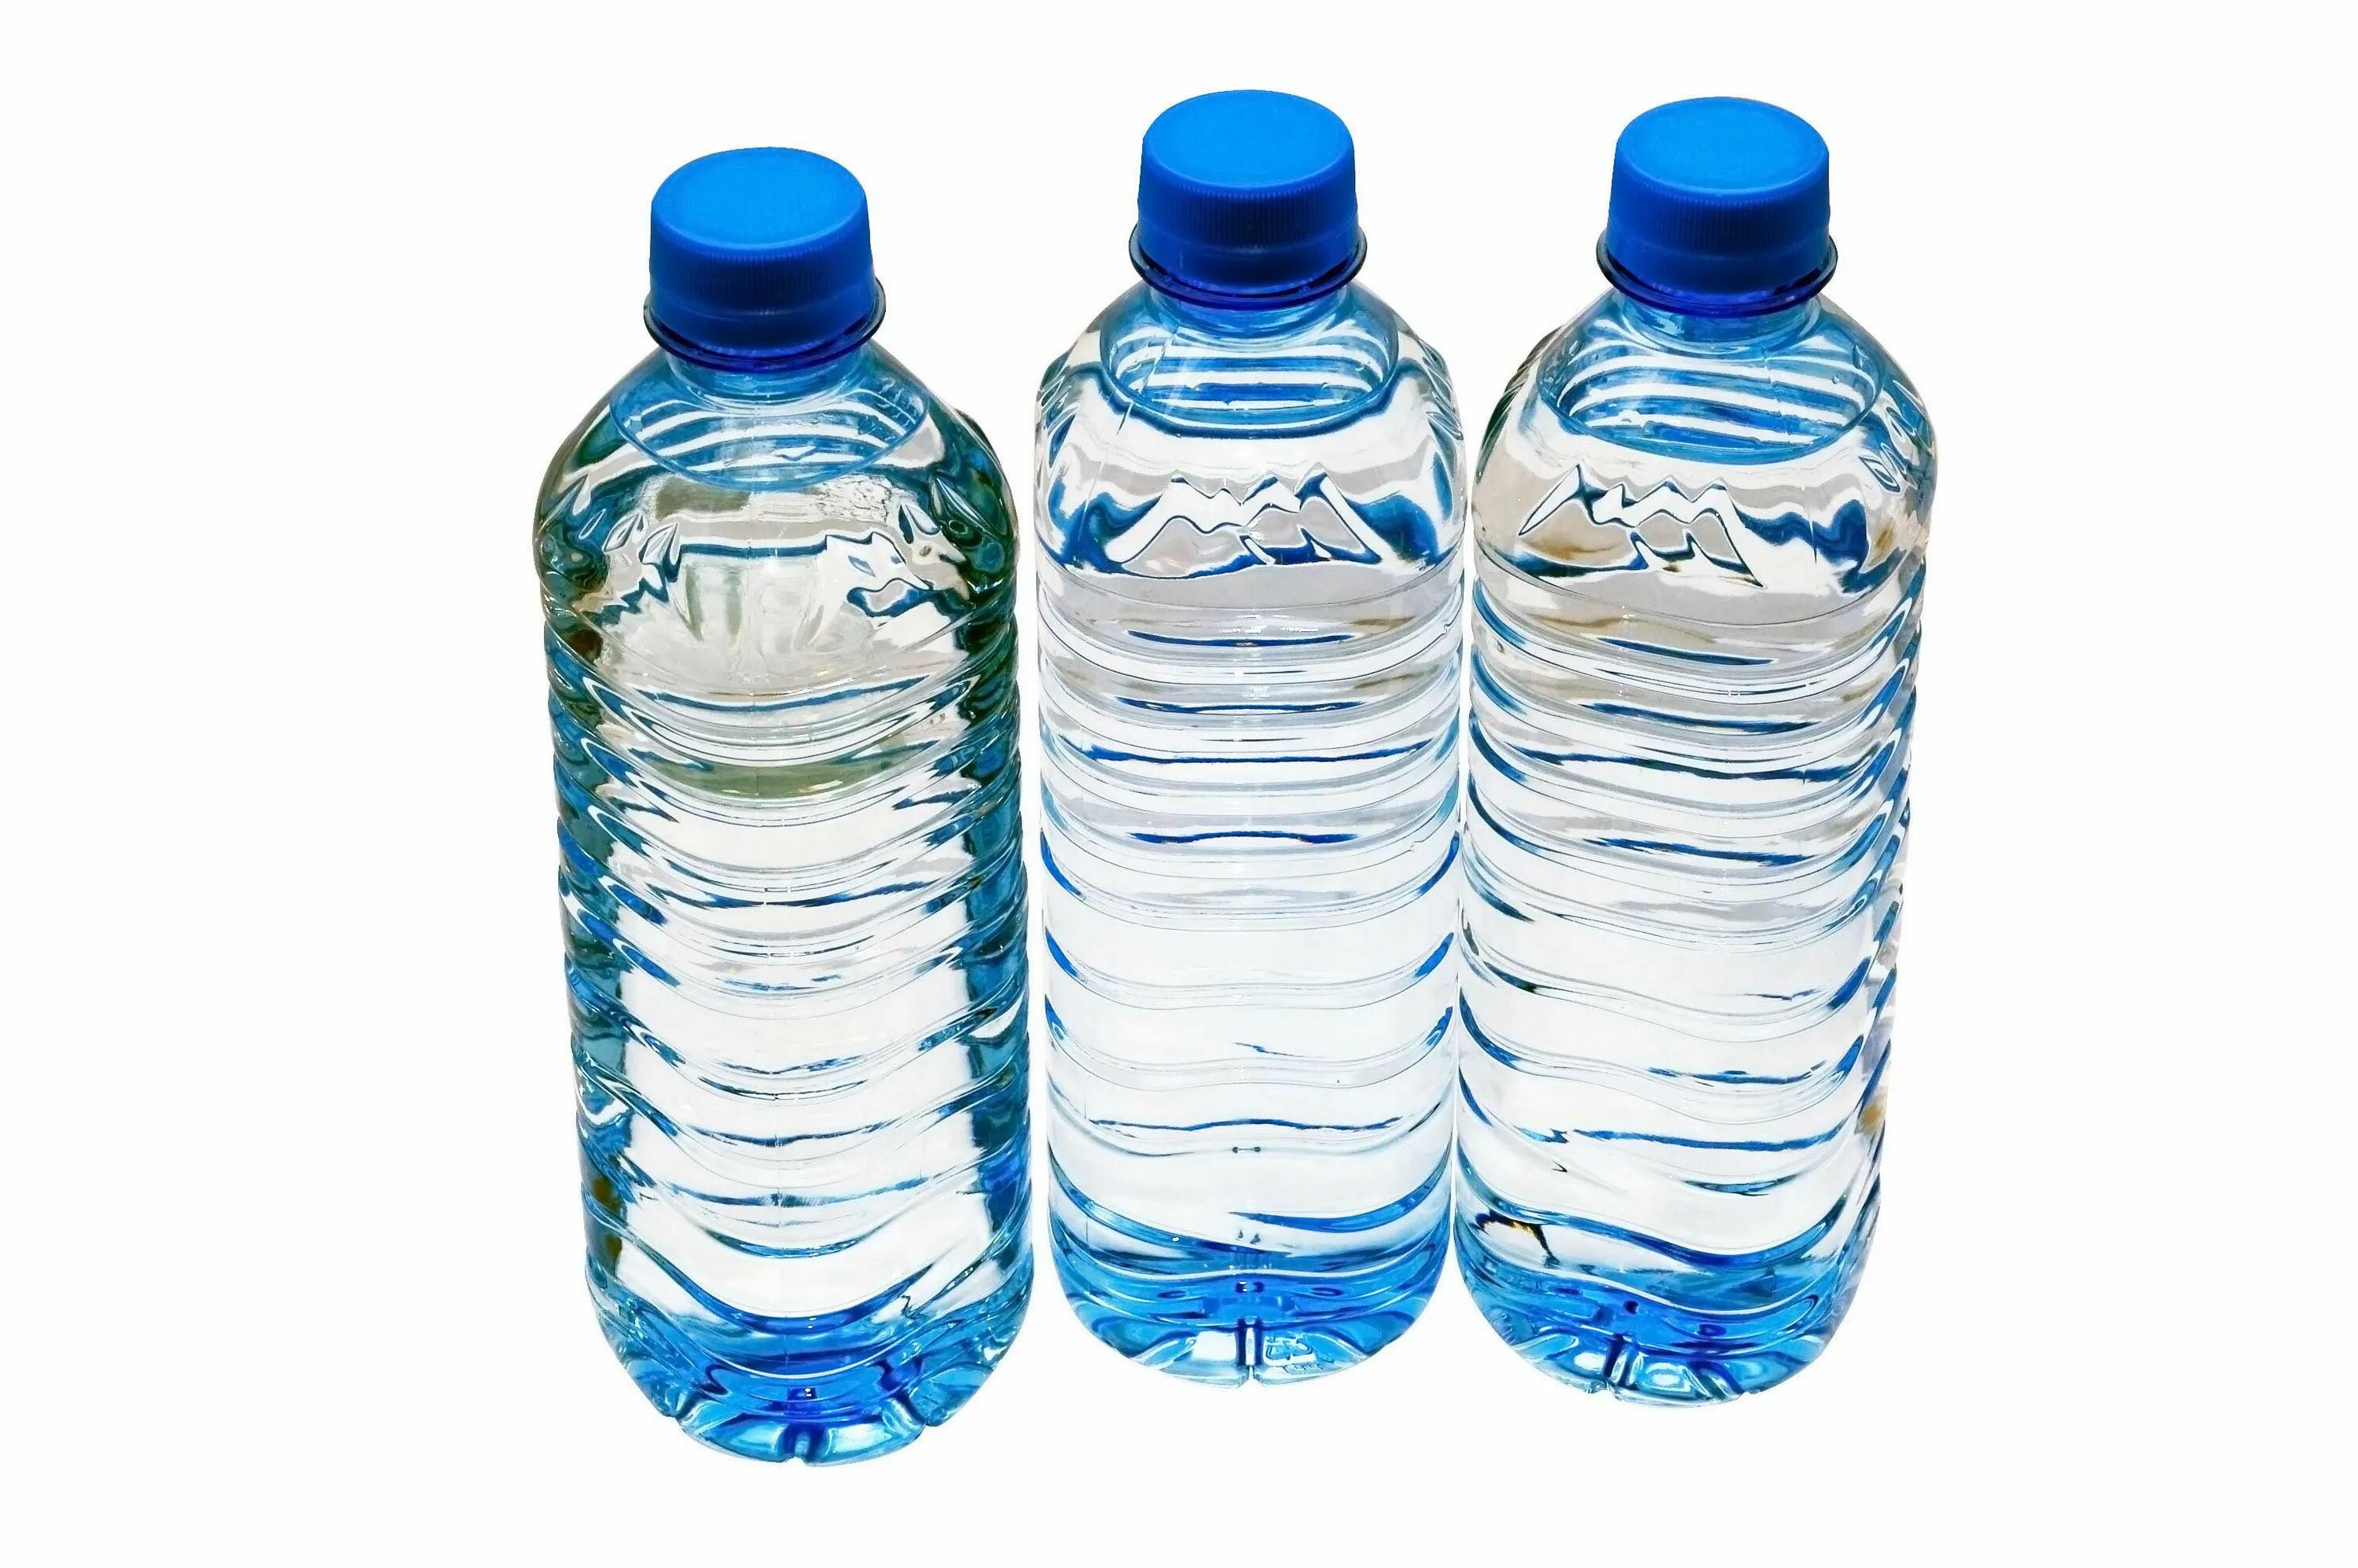 Бутылка для воды. Бутылка воды на белом фоне. Баклажка воды. Пластиковая бутылка для воды.